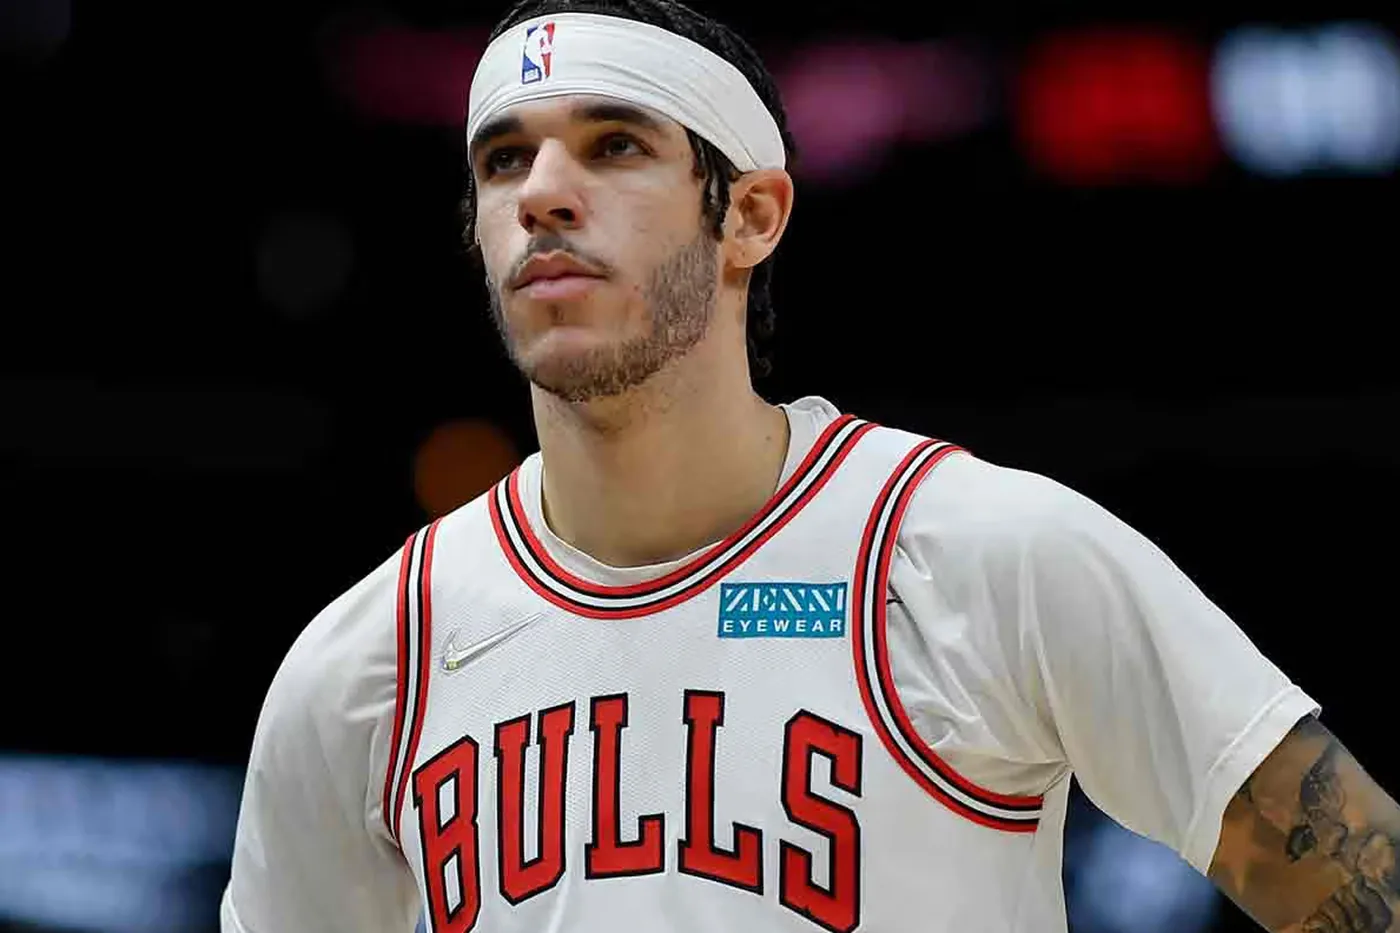 芝加哥公牛队 Chicago Bulls 宣告 Lonzo Ball 将缺席本季剩余赛程